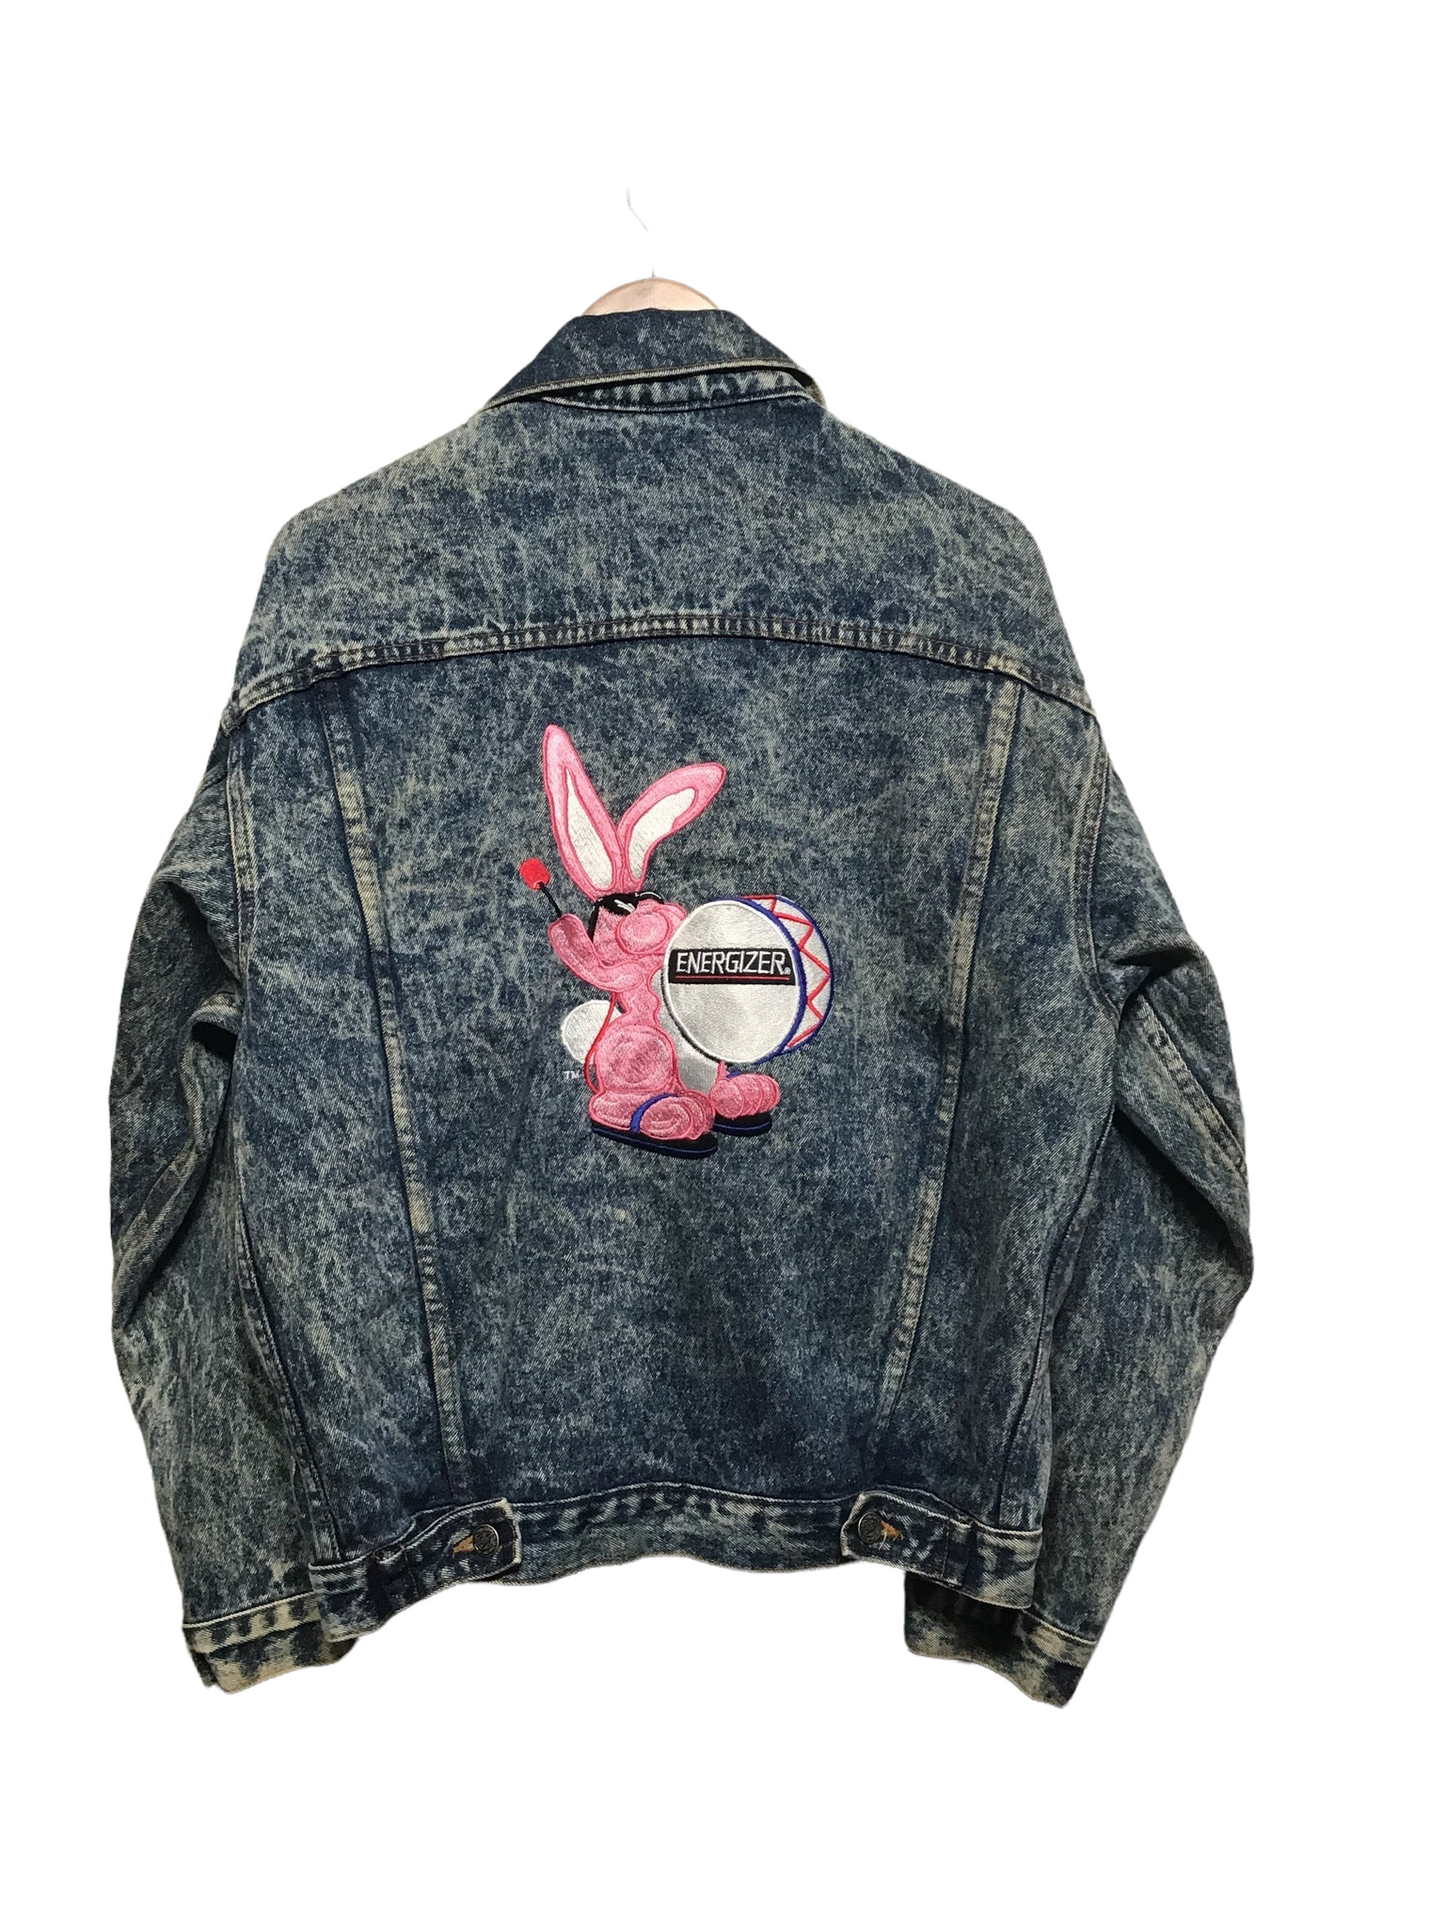 Energizer Bunny Denim Jacket (Size M)